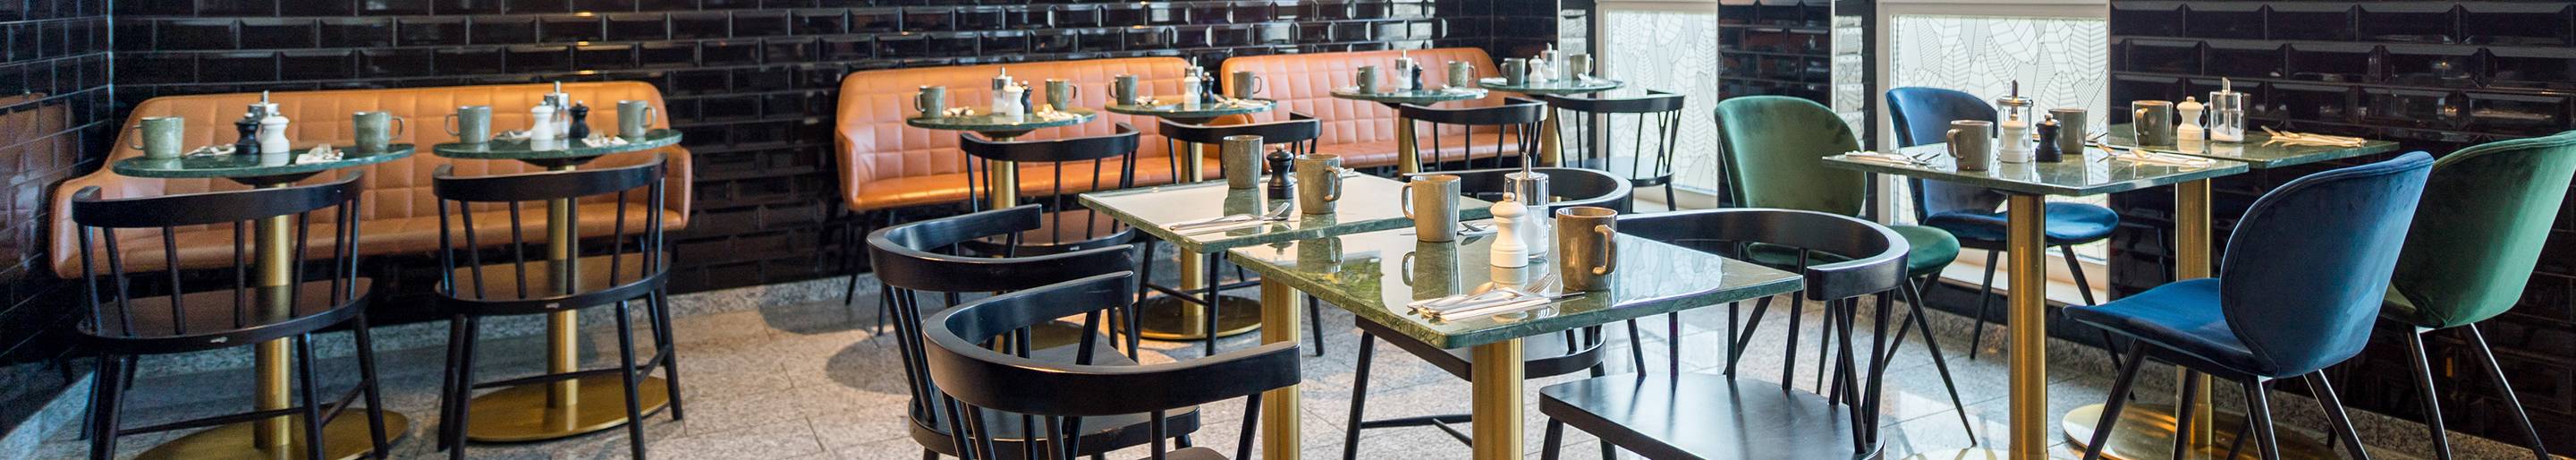 Indoor Café-Möbel für Ihre Gastronomie und Hotellerie